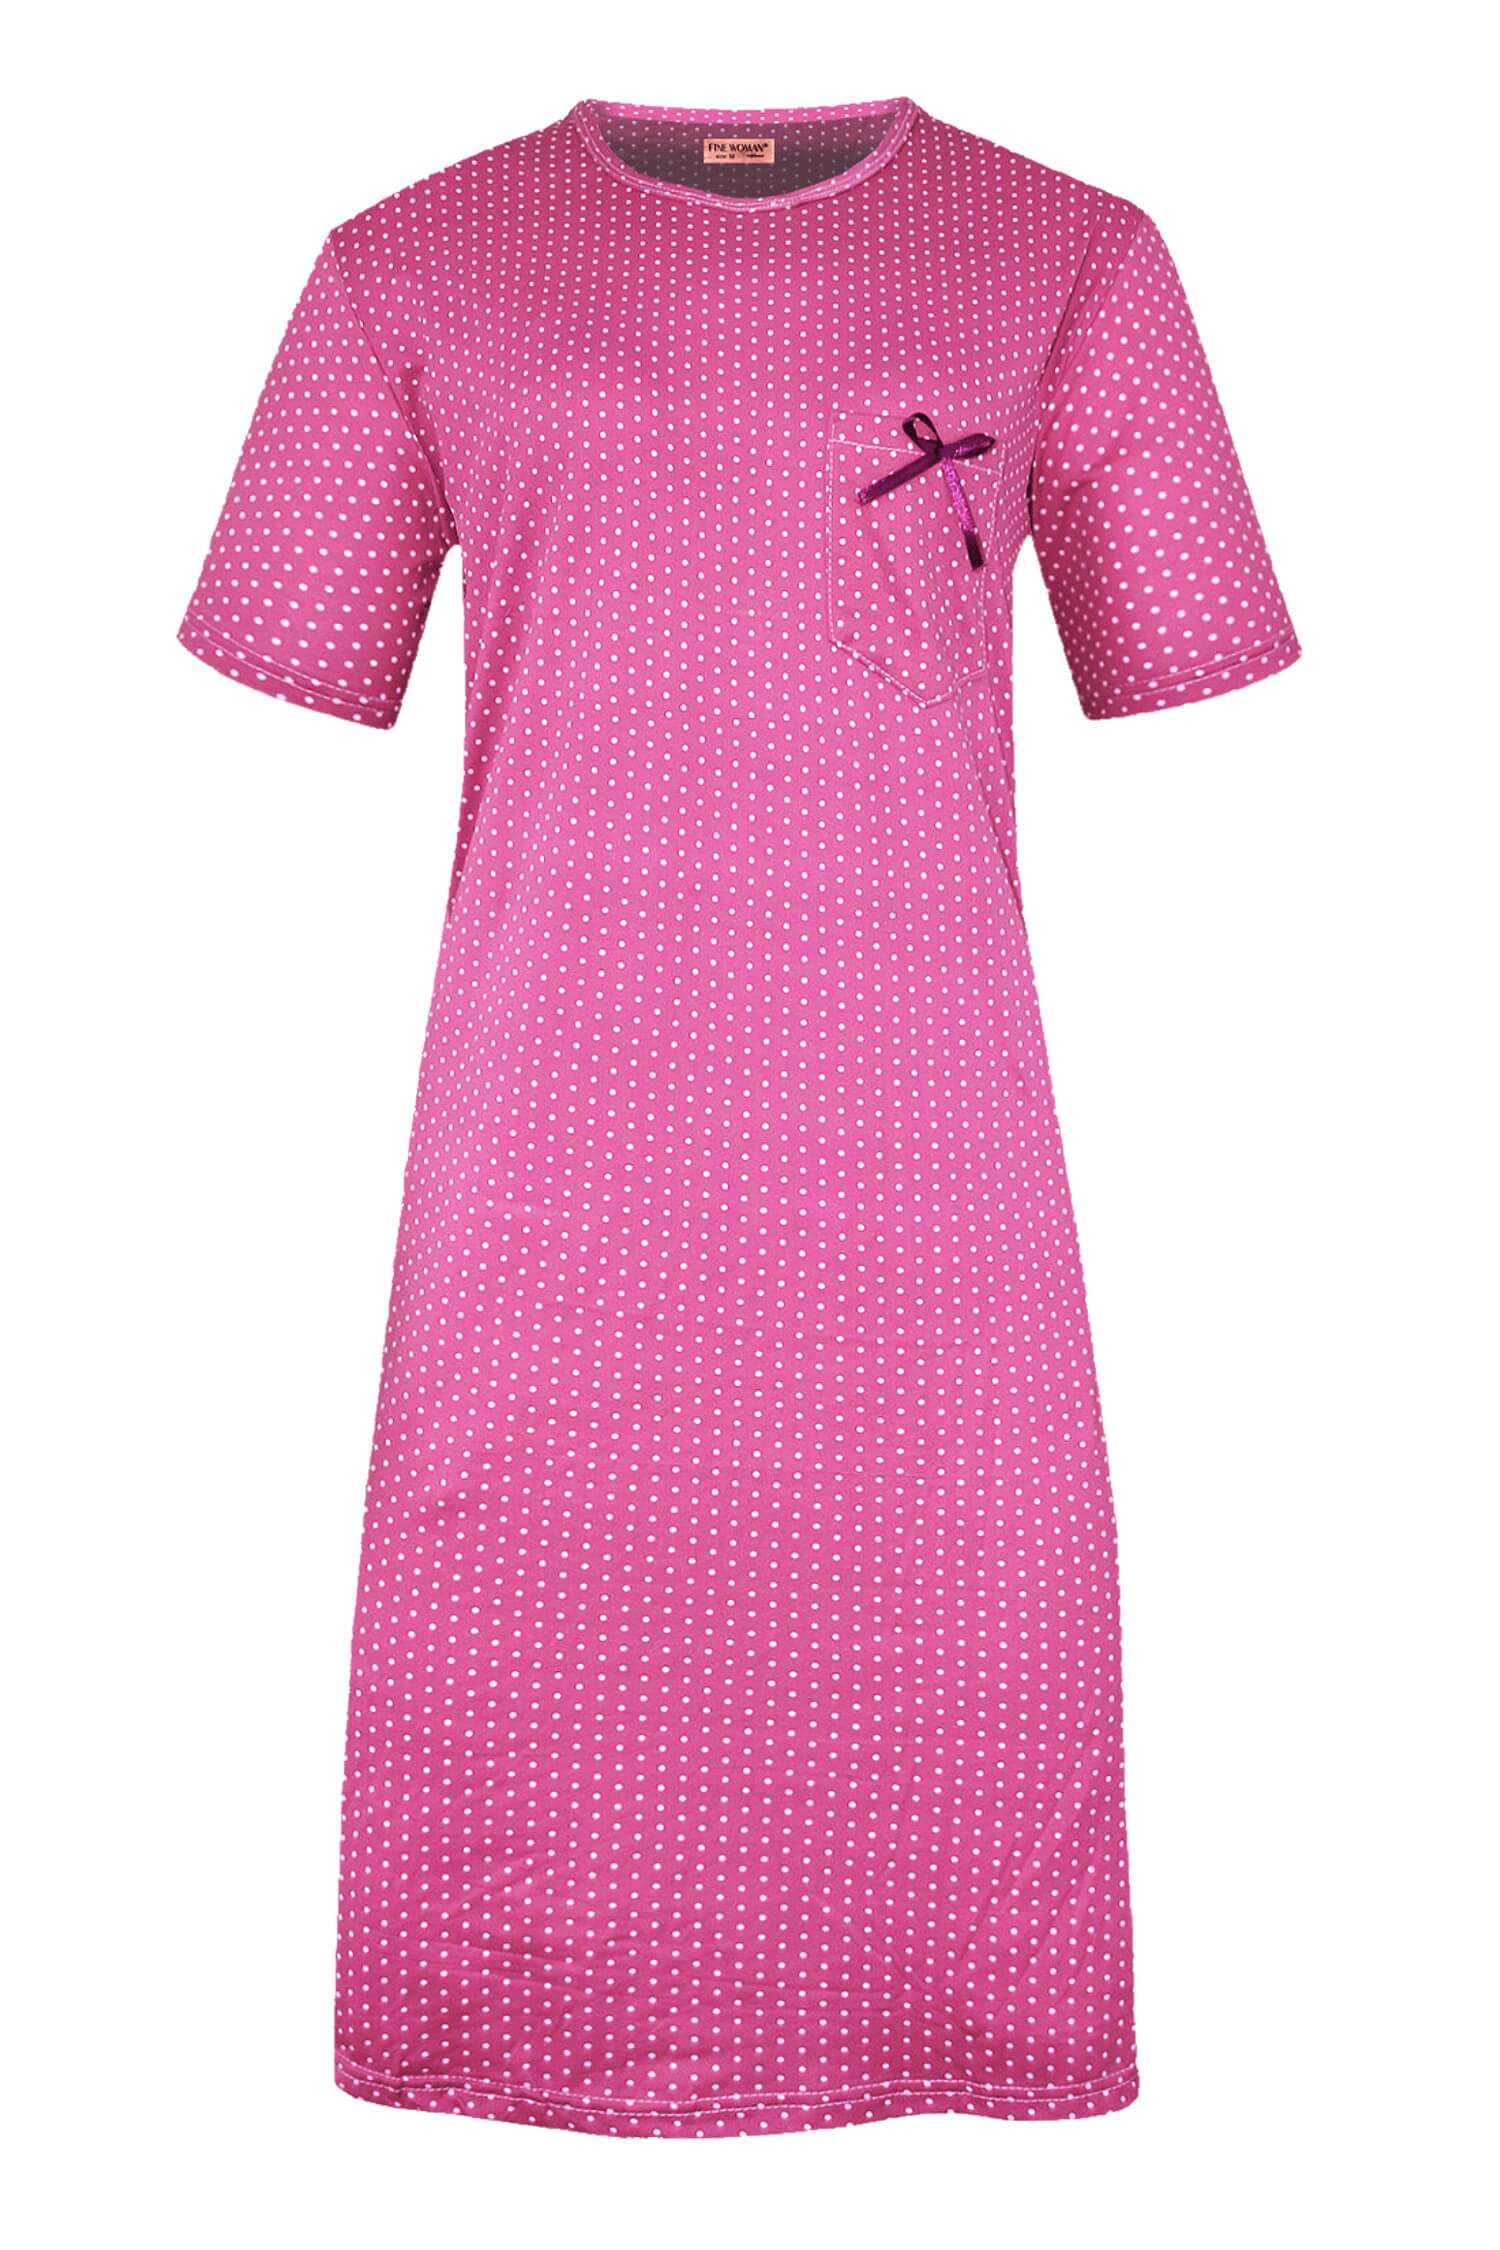 Monika dámská noční košile s puntíky 6533 4XL tmavě růžová